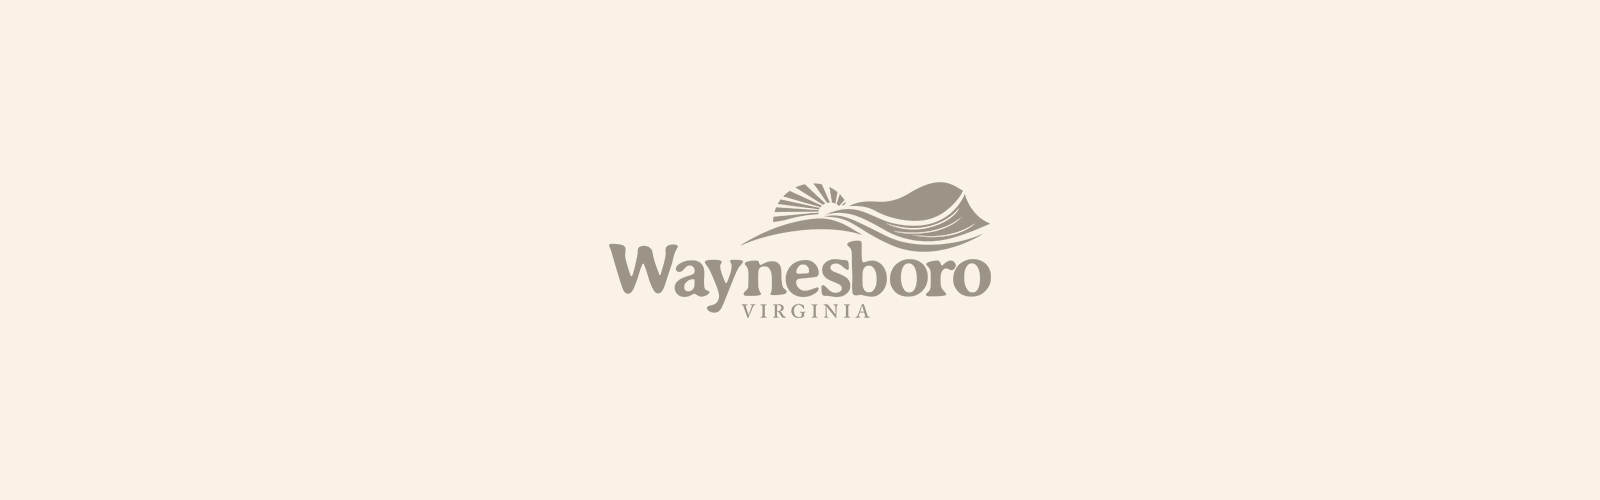 Waynesboro - Family Friendly Hikes Near Waynesboro